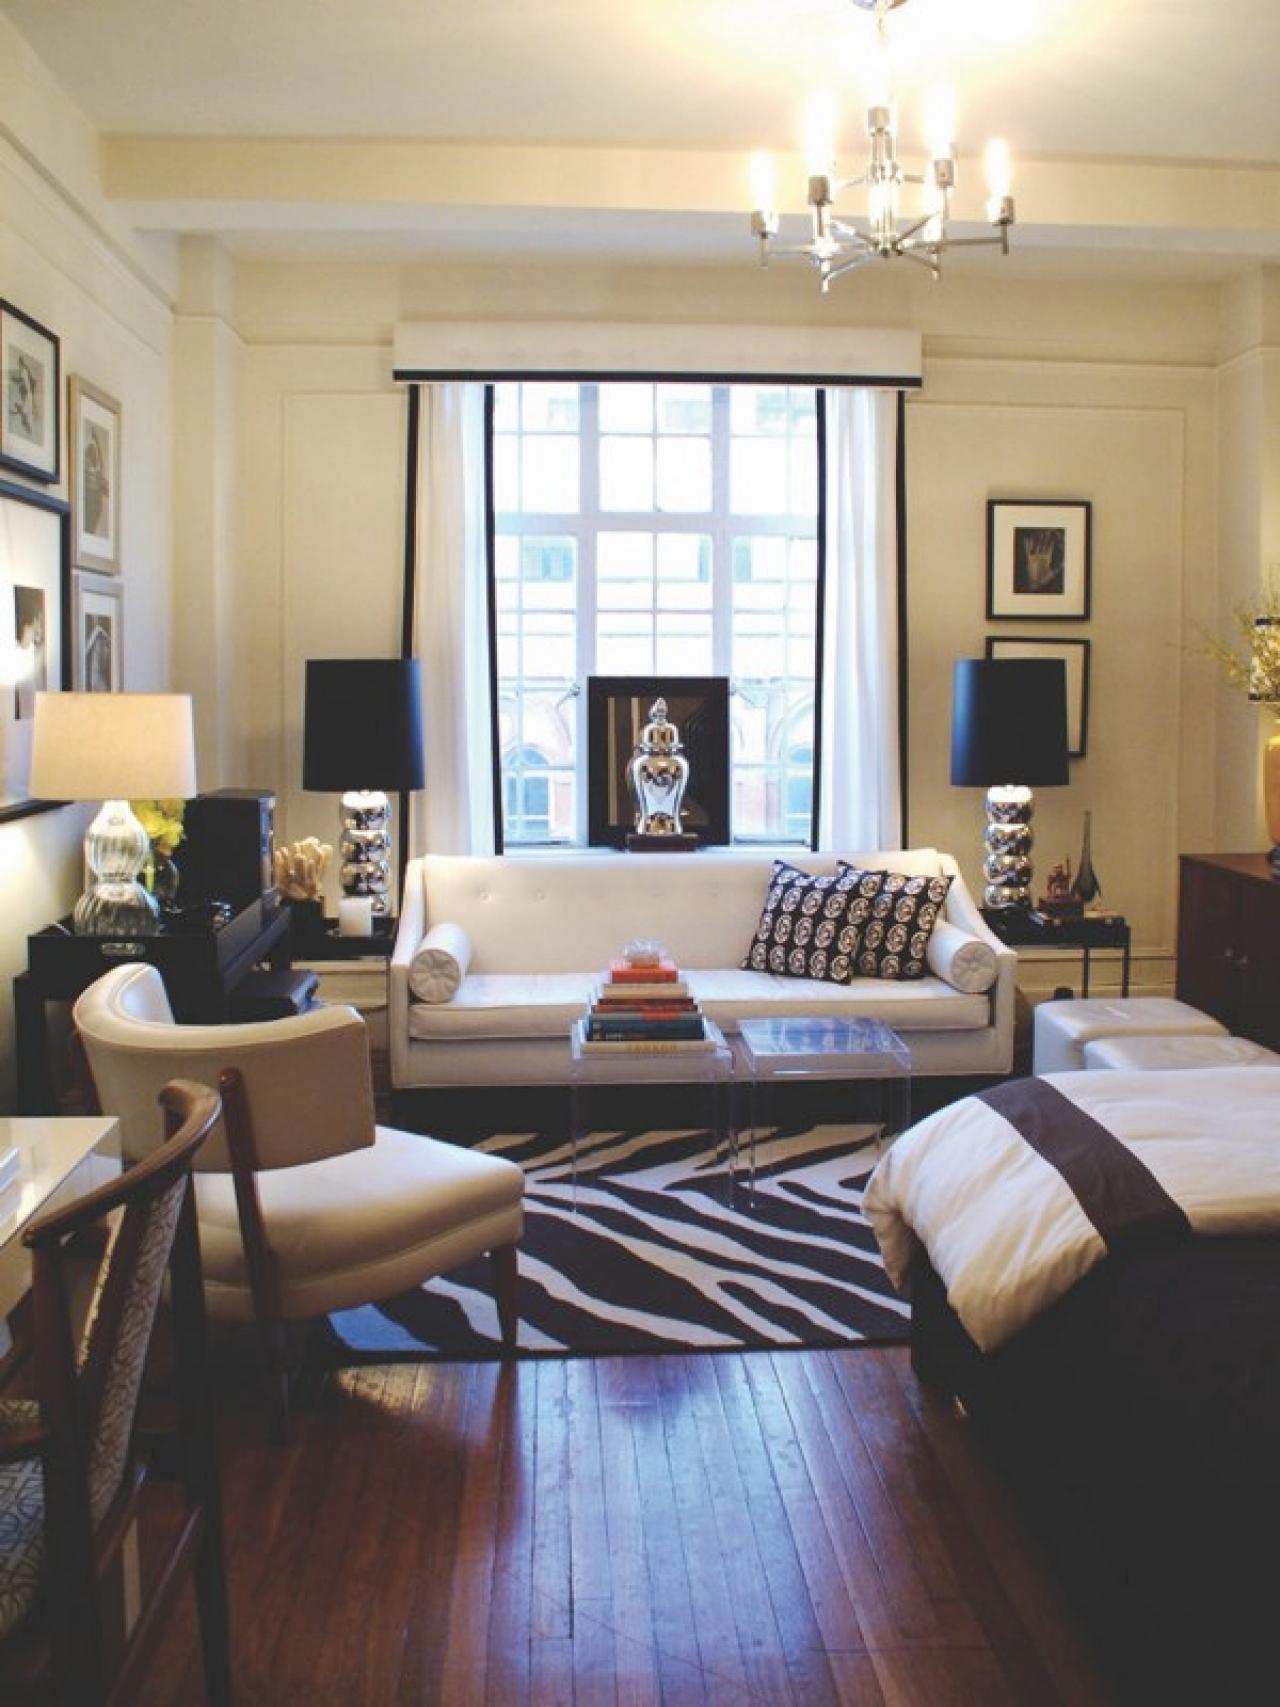 12 Design Ideas for Your Studio Apartment | HGTV's Decorating & Design